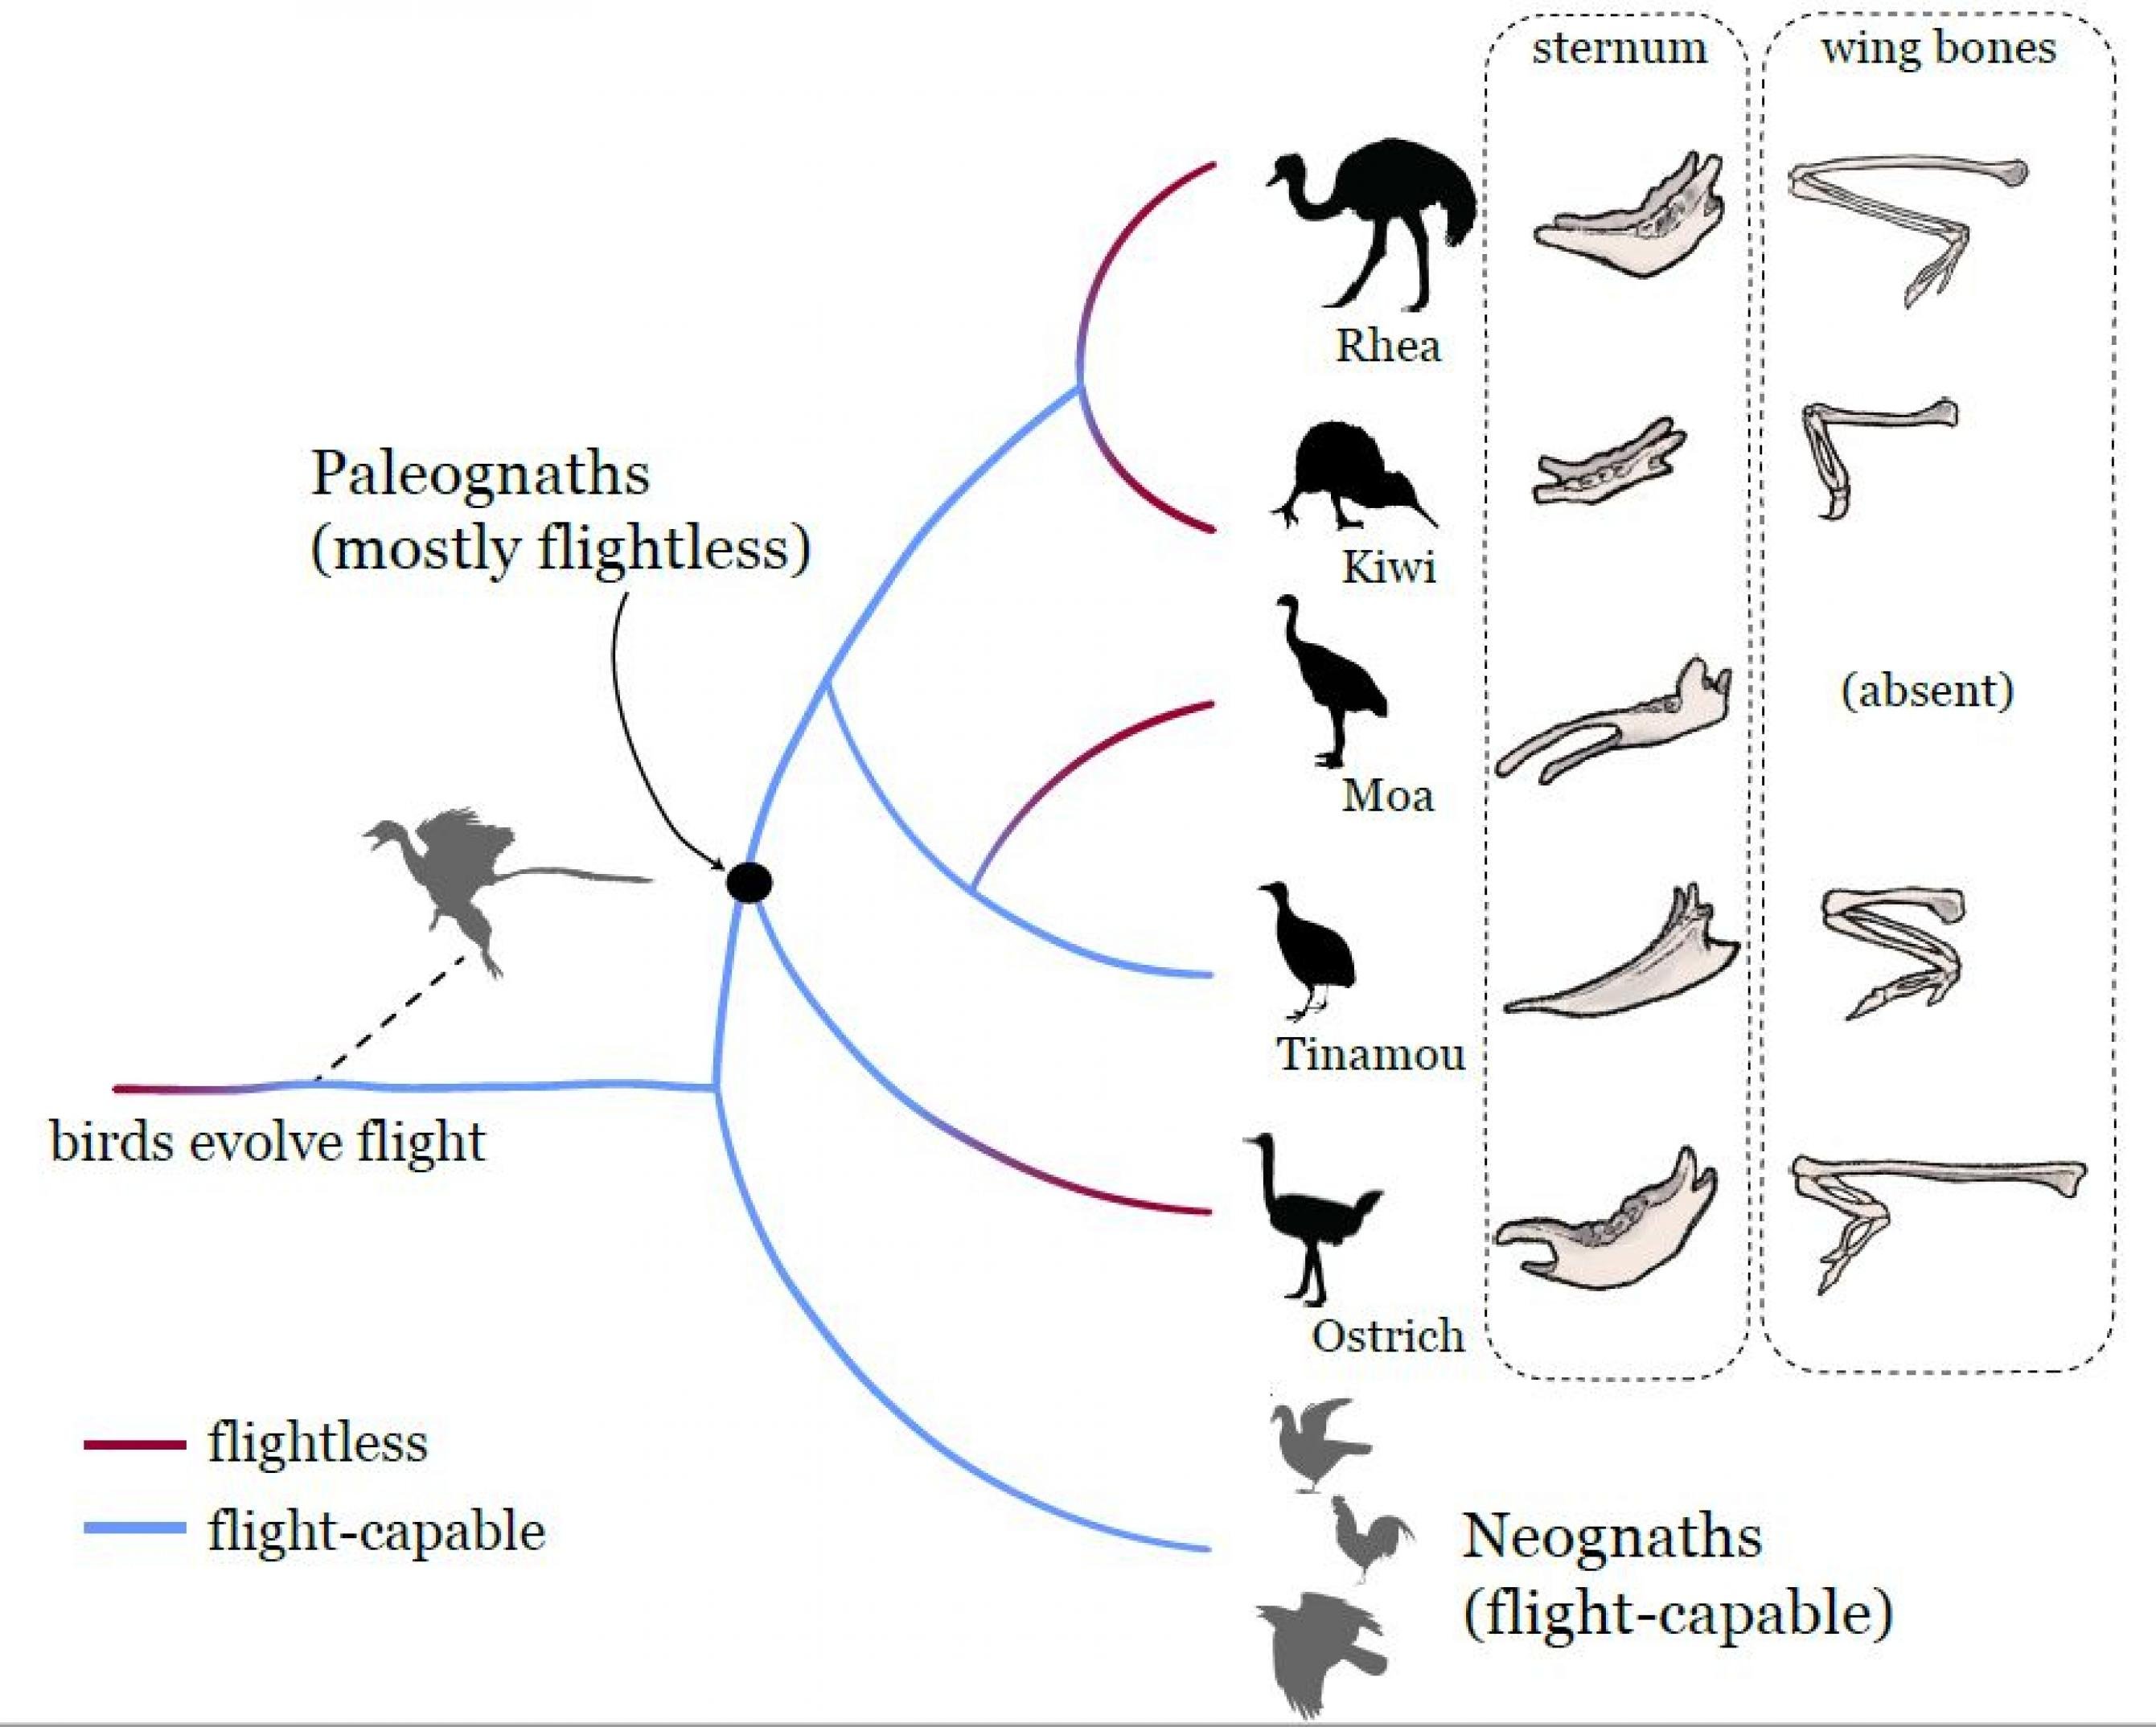 Stammbaum der Urkiefervögel (Paläognathen): Nandu und Kiwi sind recht eng verwandt. Sie teilen einen gemeinsamen Vorfahren mit Moas und Steißhühnern. Alle vier haben einen gemeinsamen Vorfahren mit dem Strauß.